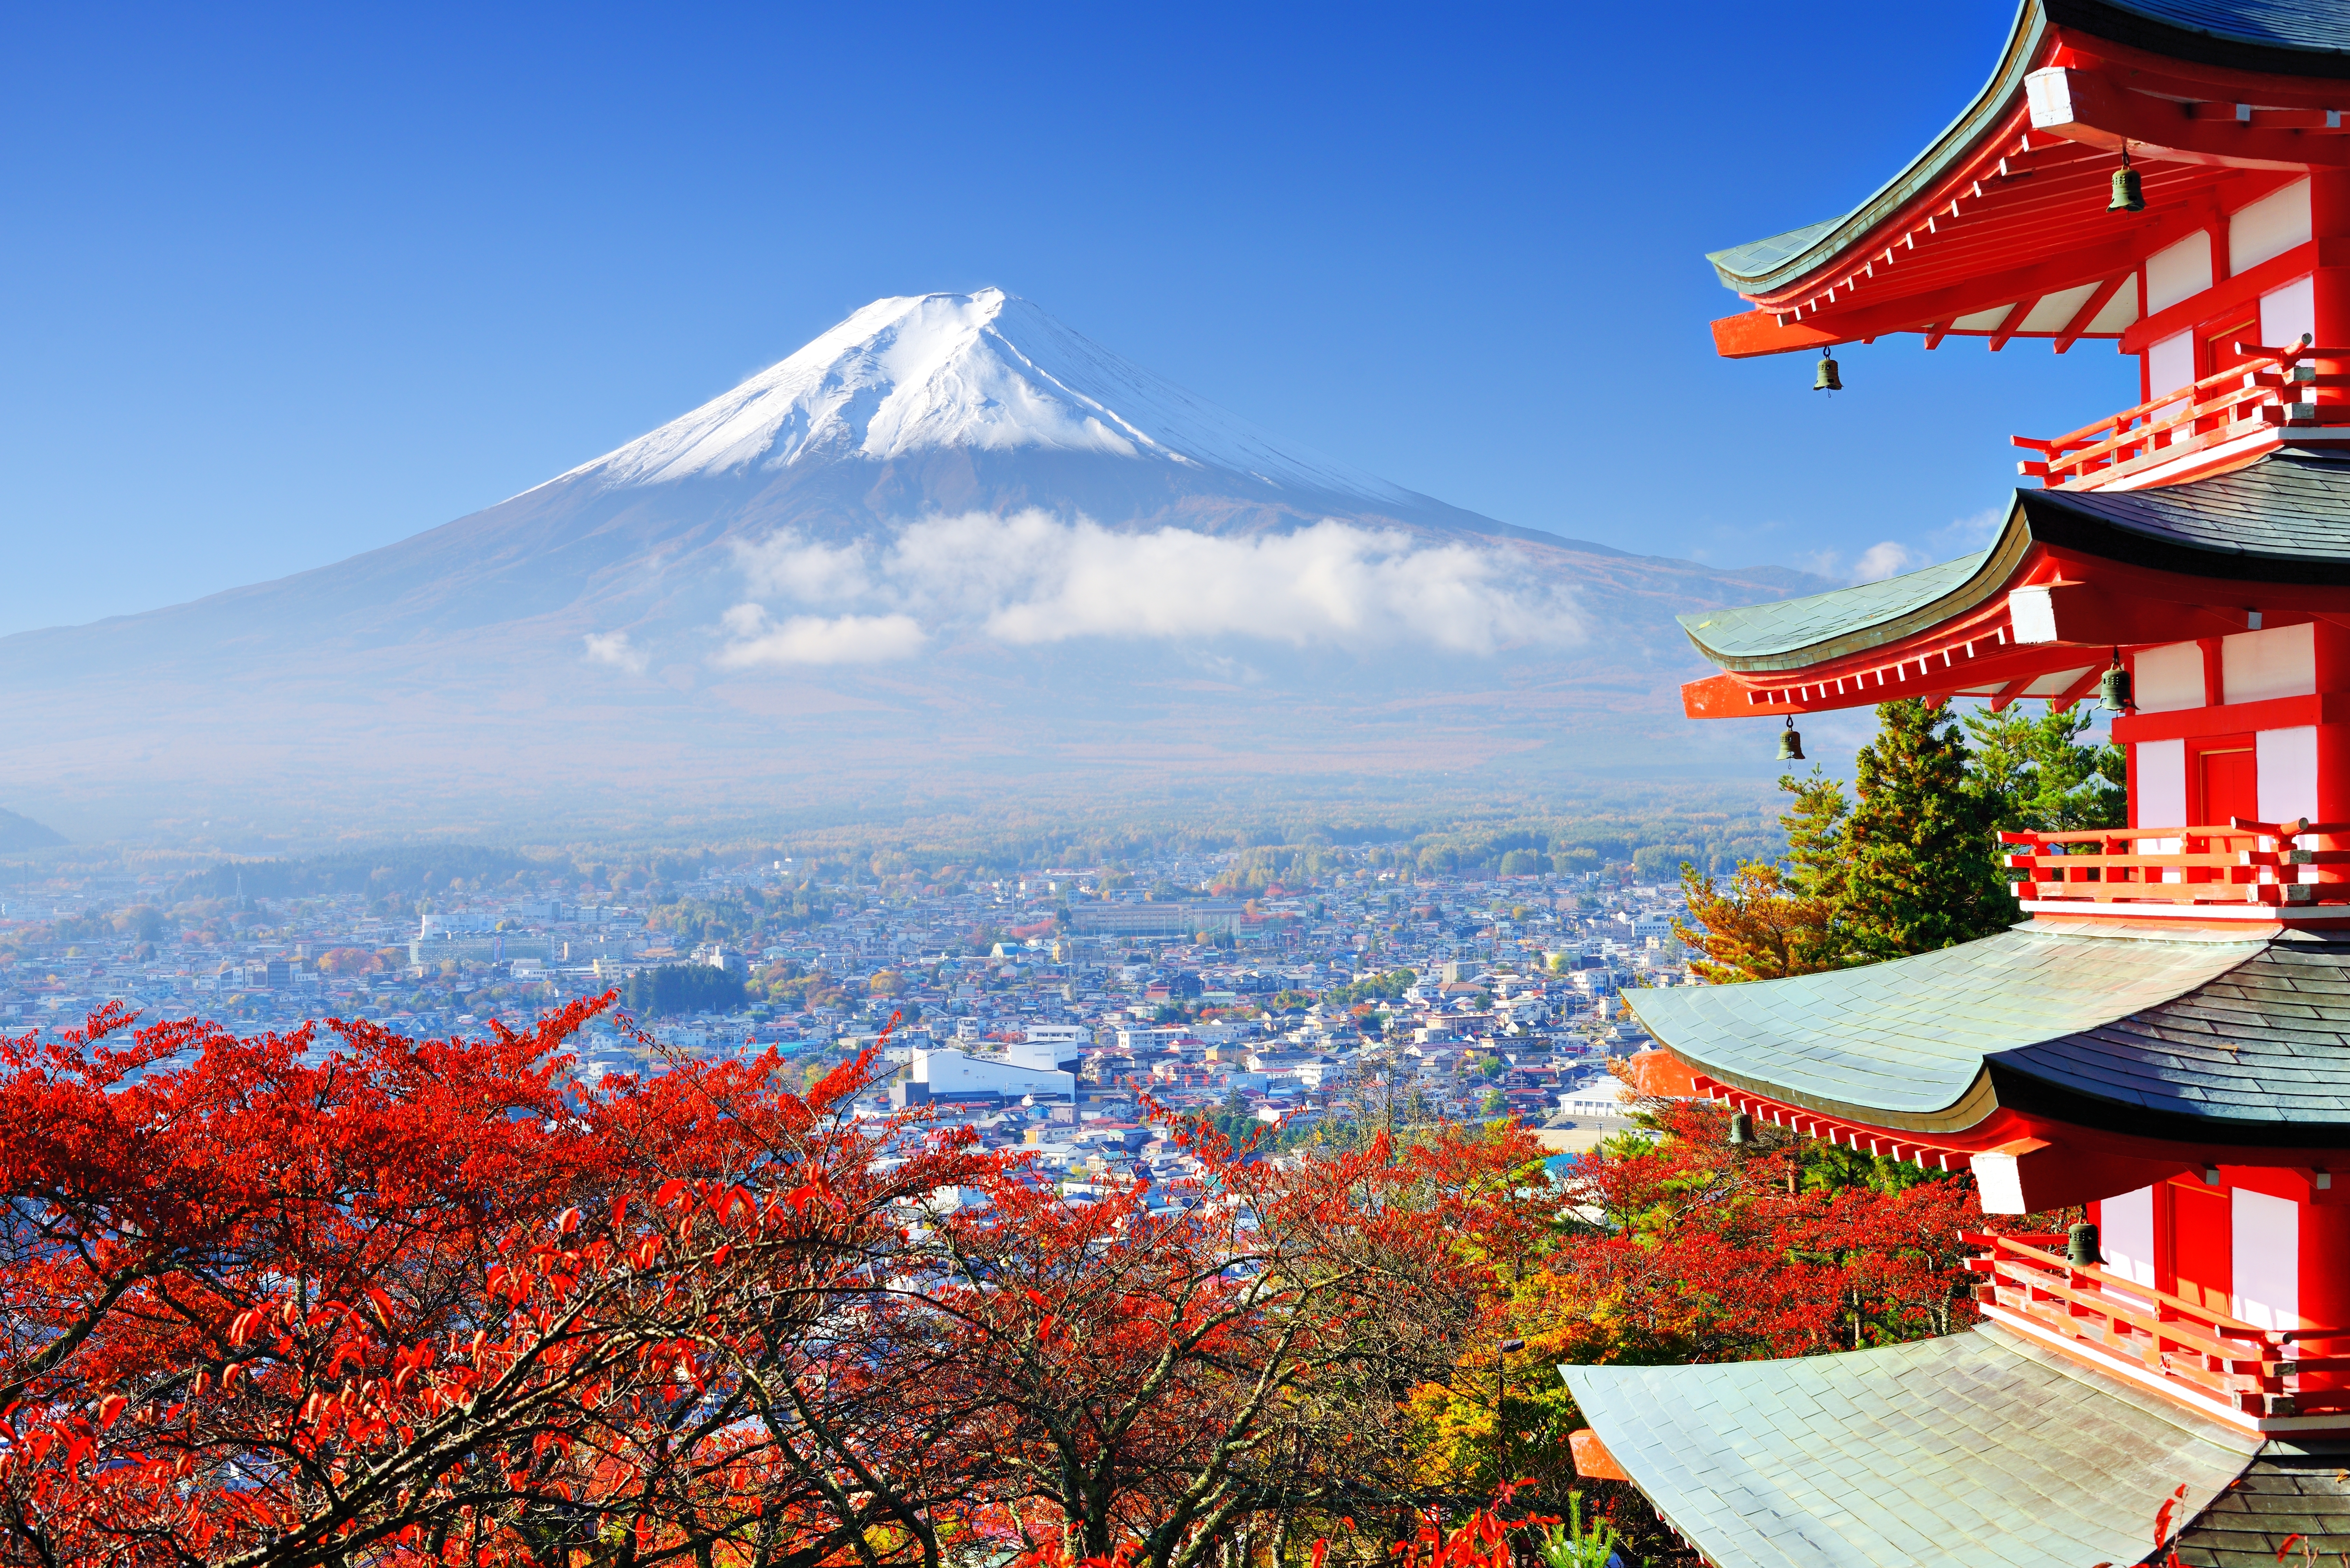 Nhật Bản là một xứ sở có phong cảnh được coi là một trong những nơi đẹp nhất thế giới